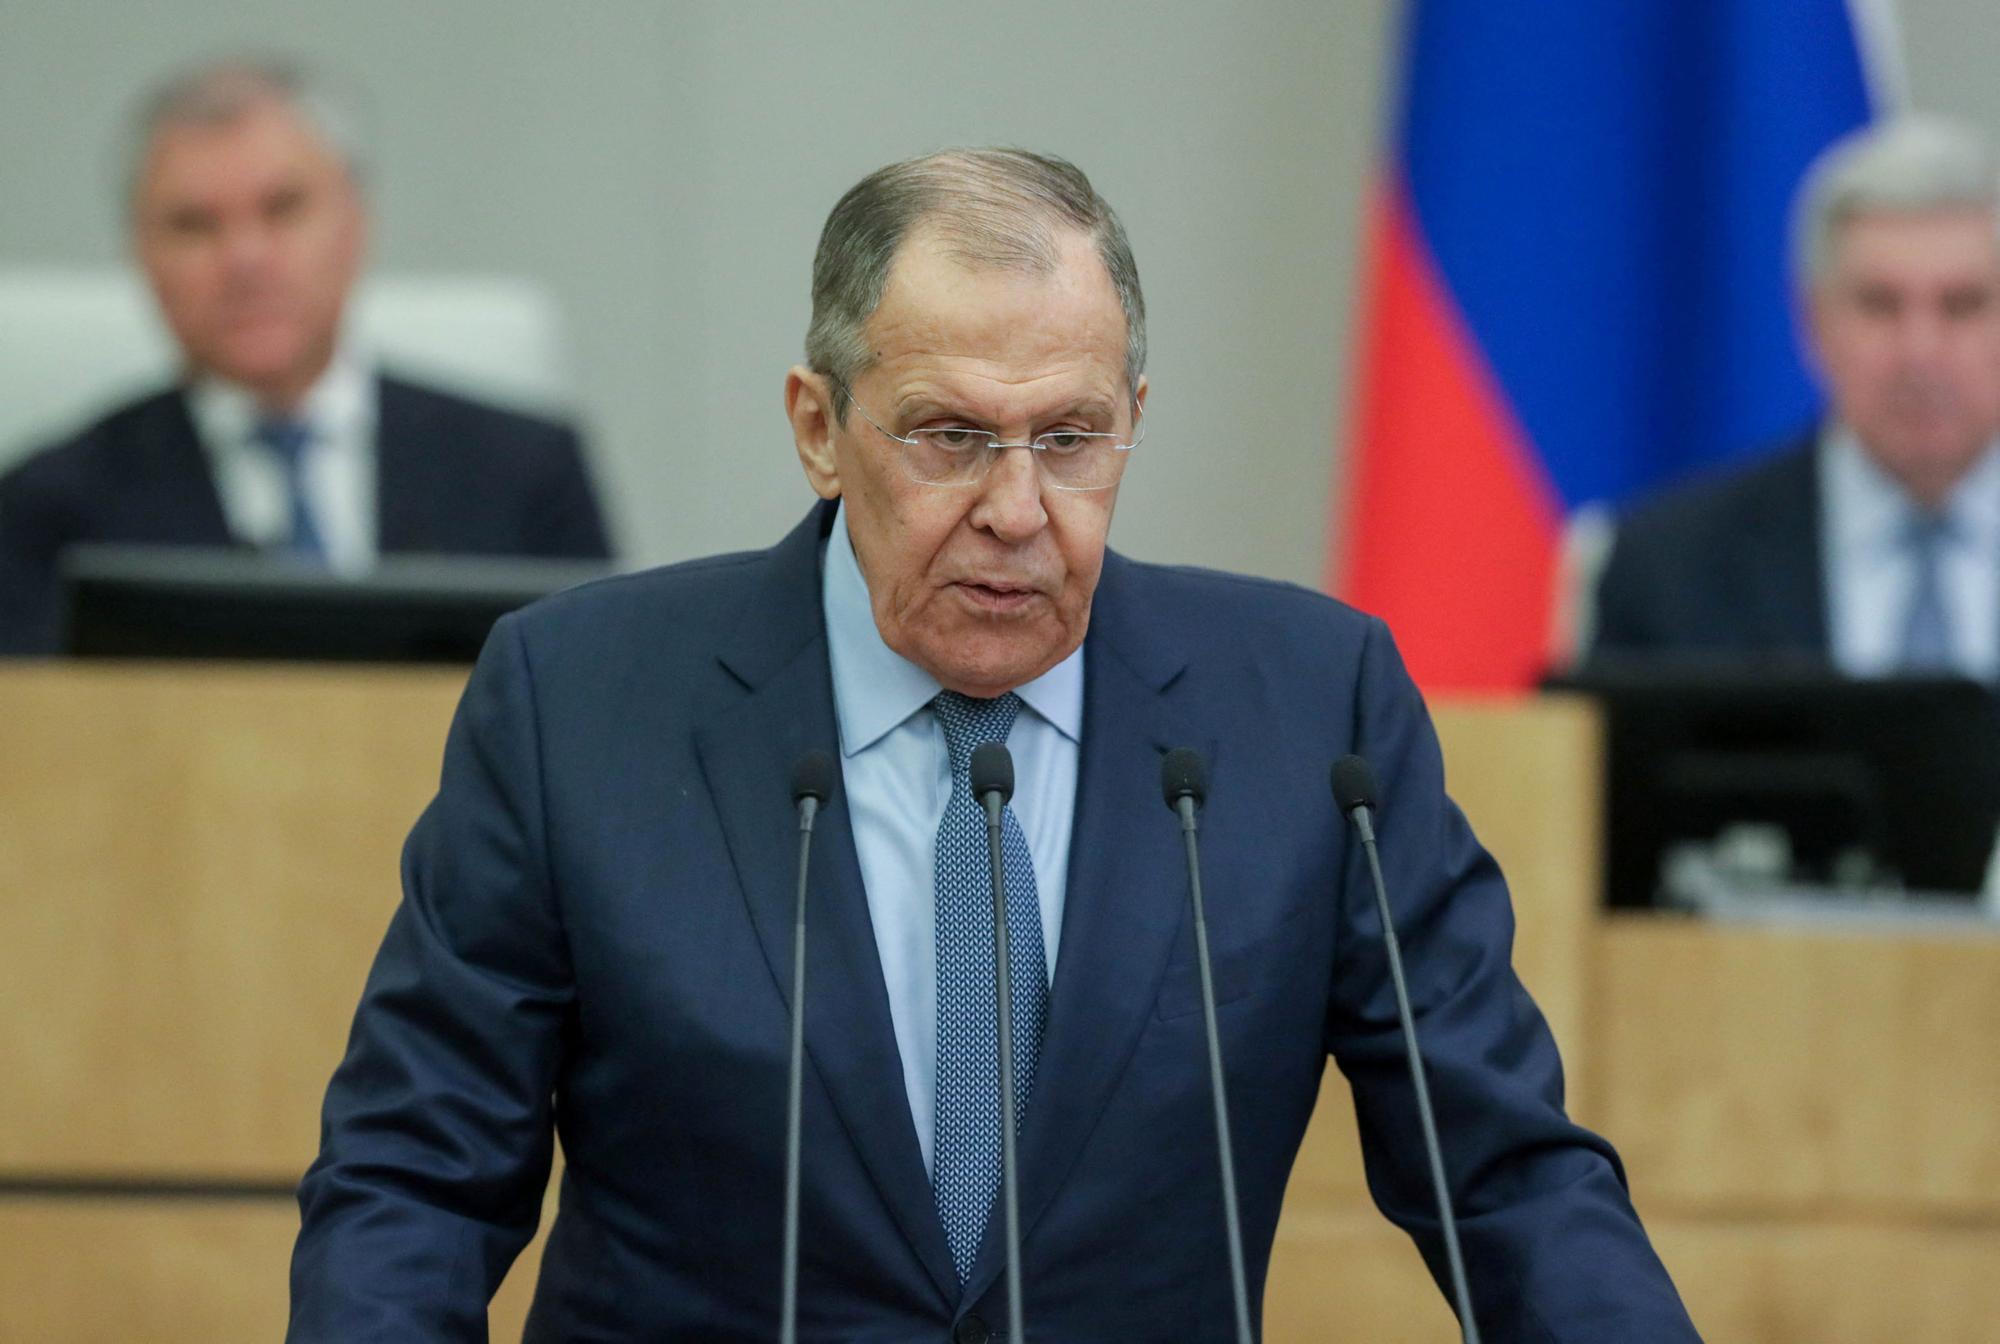 El ministro de Exteriores de Rusia, Serguéi Lavrov, durante su discurso en la Duma.